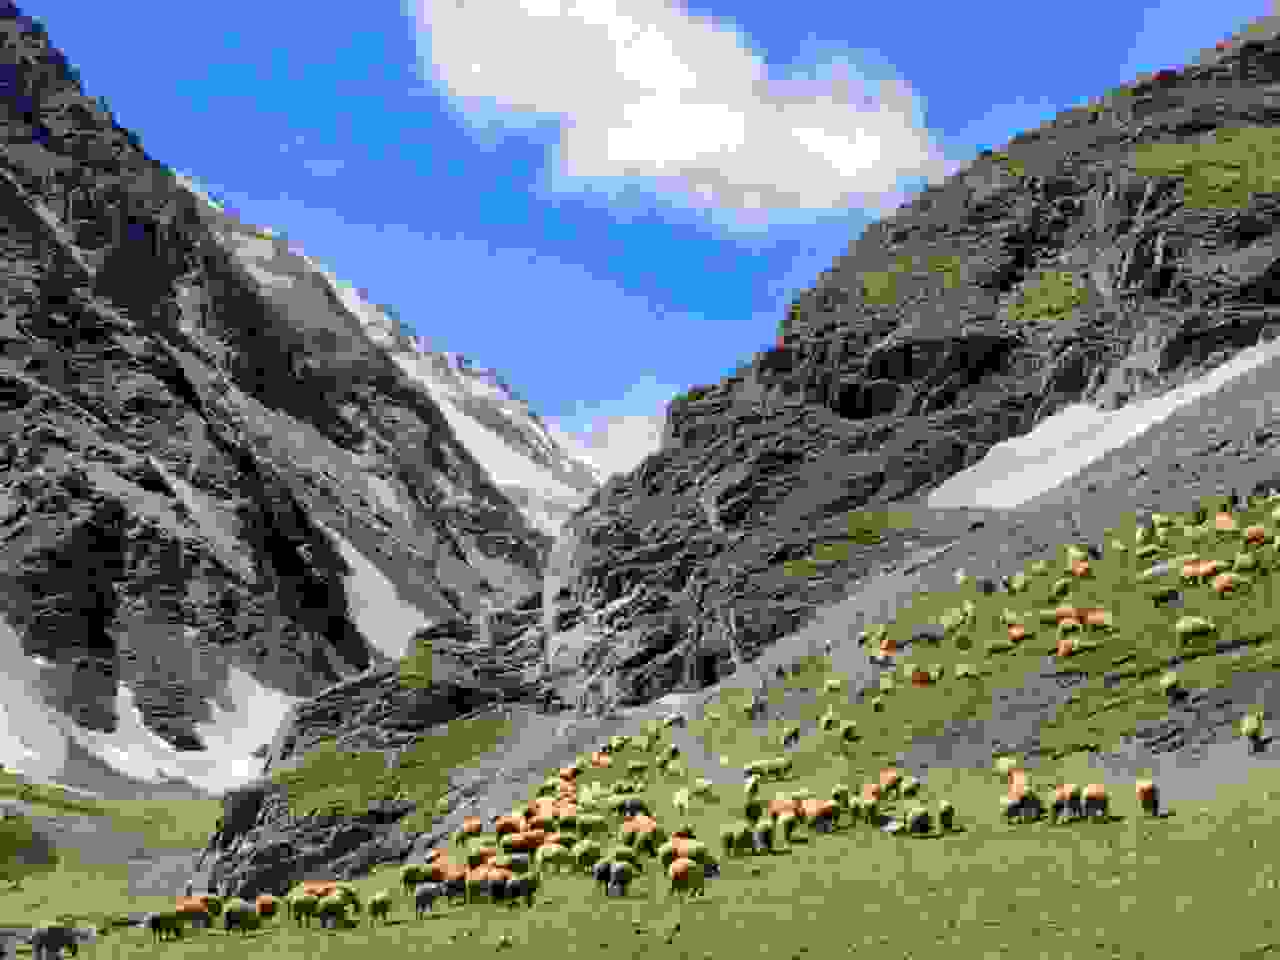 Khinalug mountains and sheep